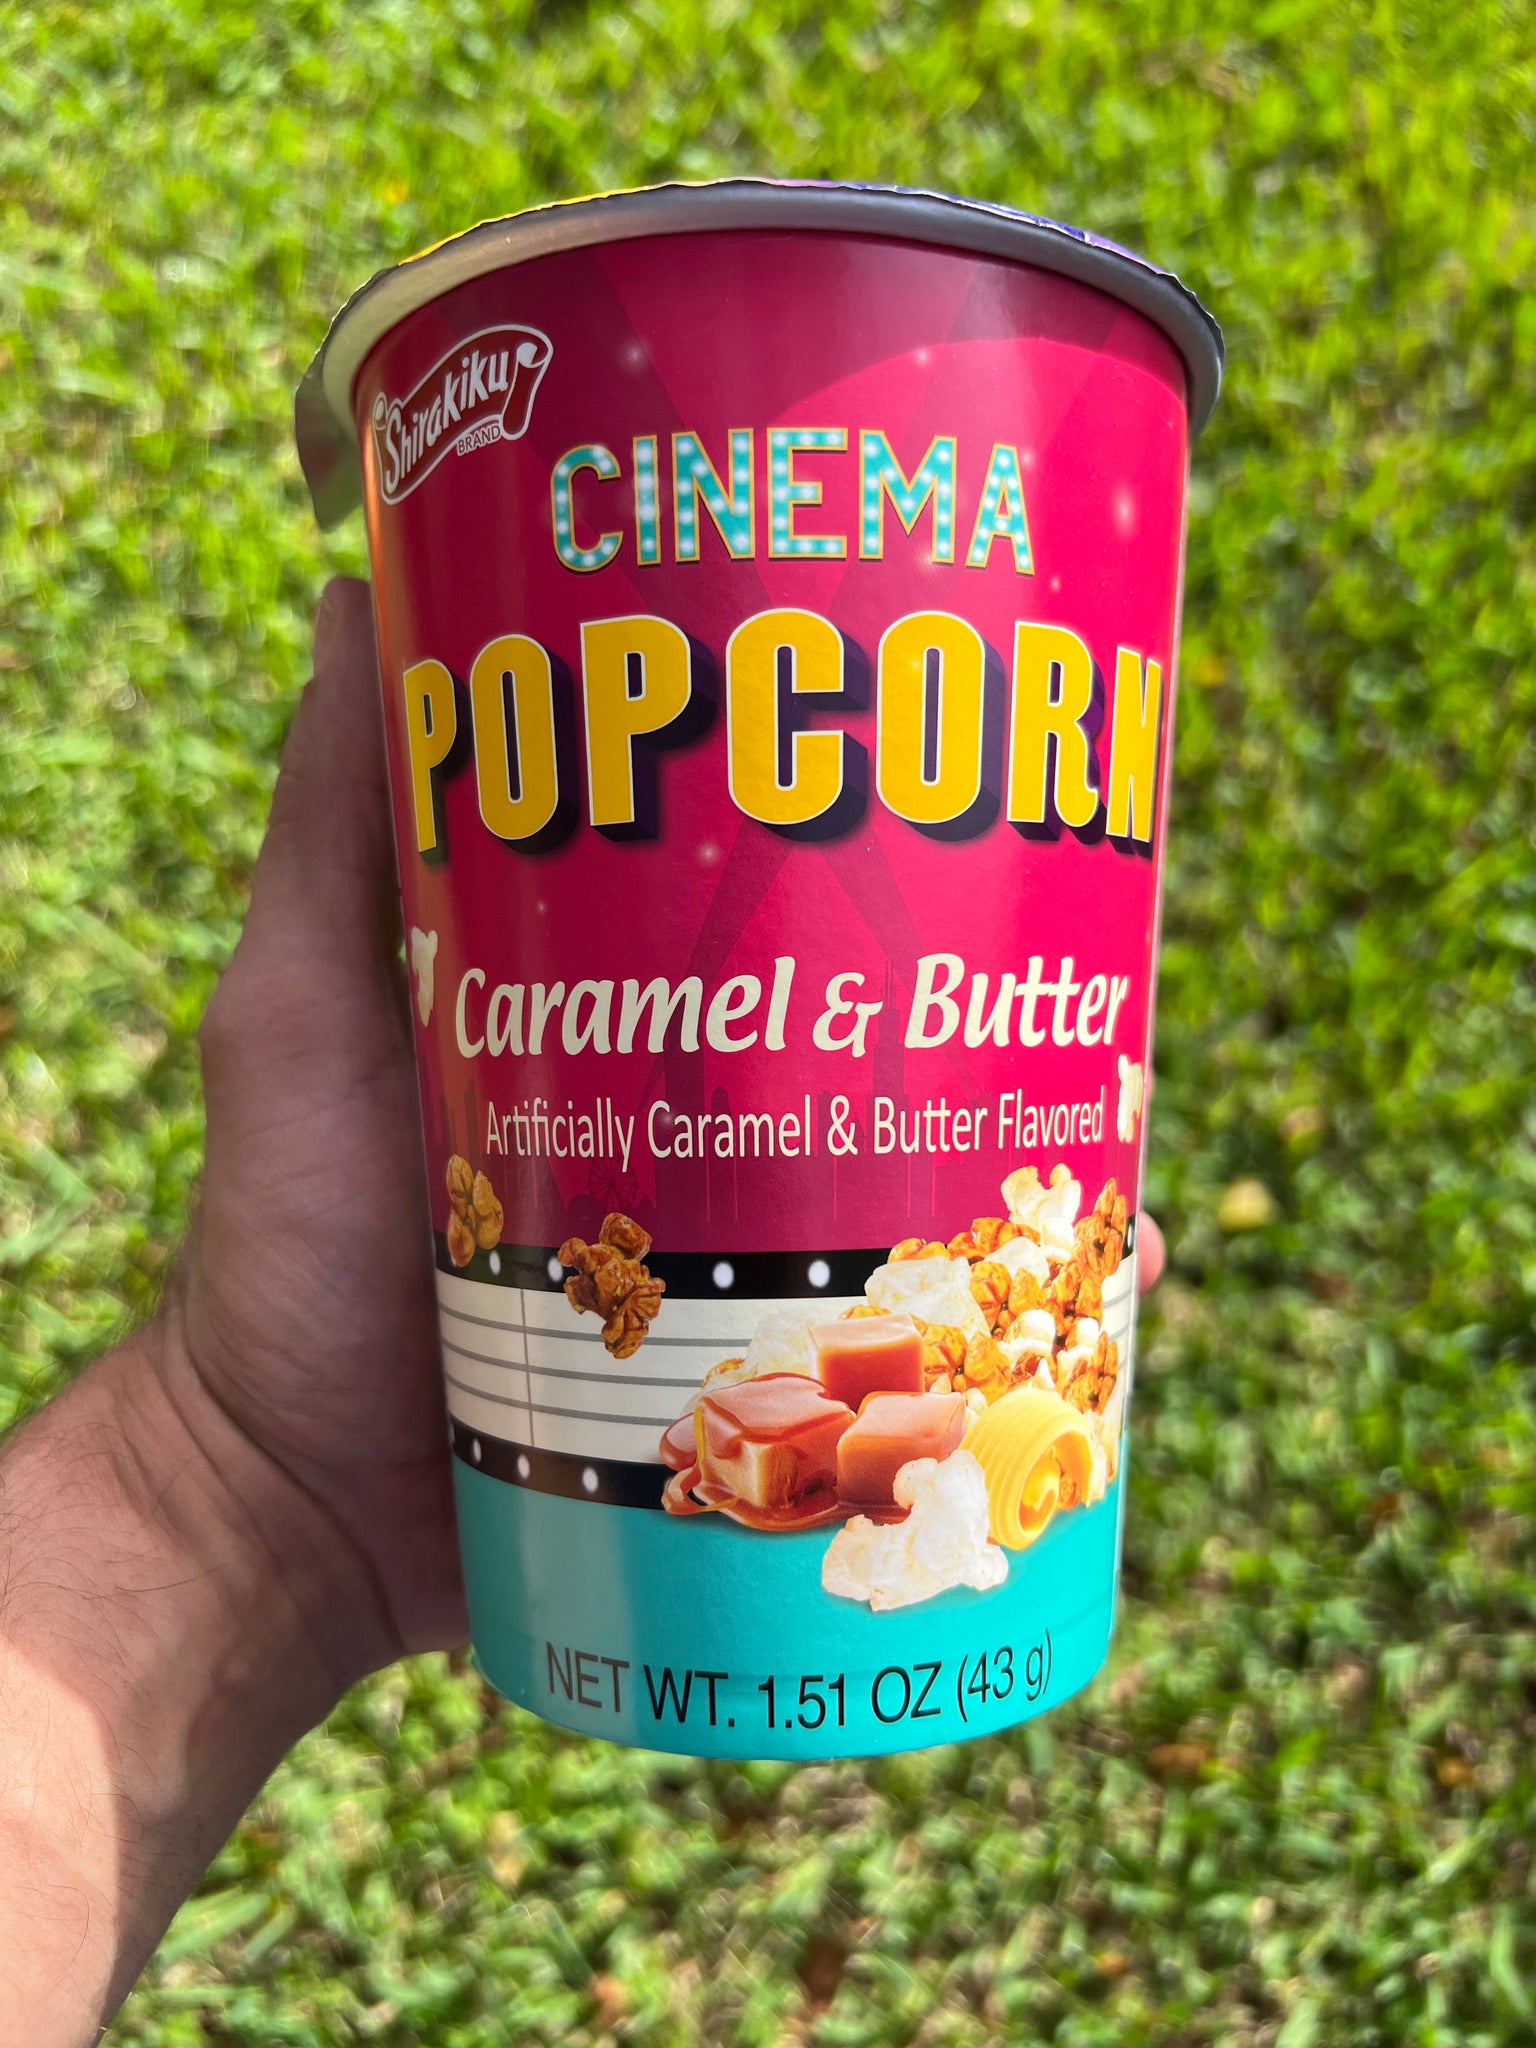 Shirakiku Cinema Caramel & Butter Popcorn (Korea)